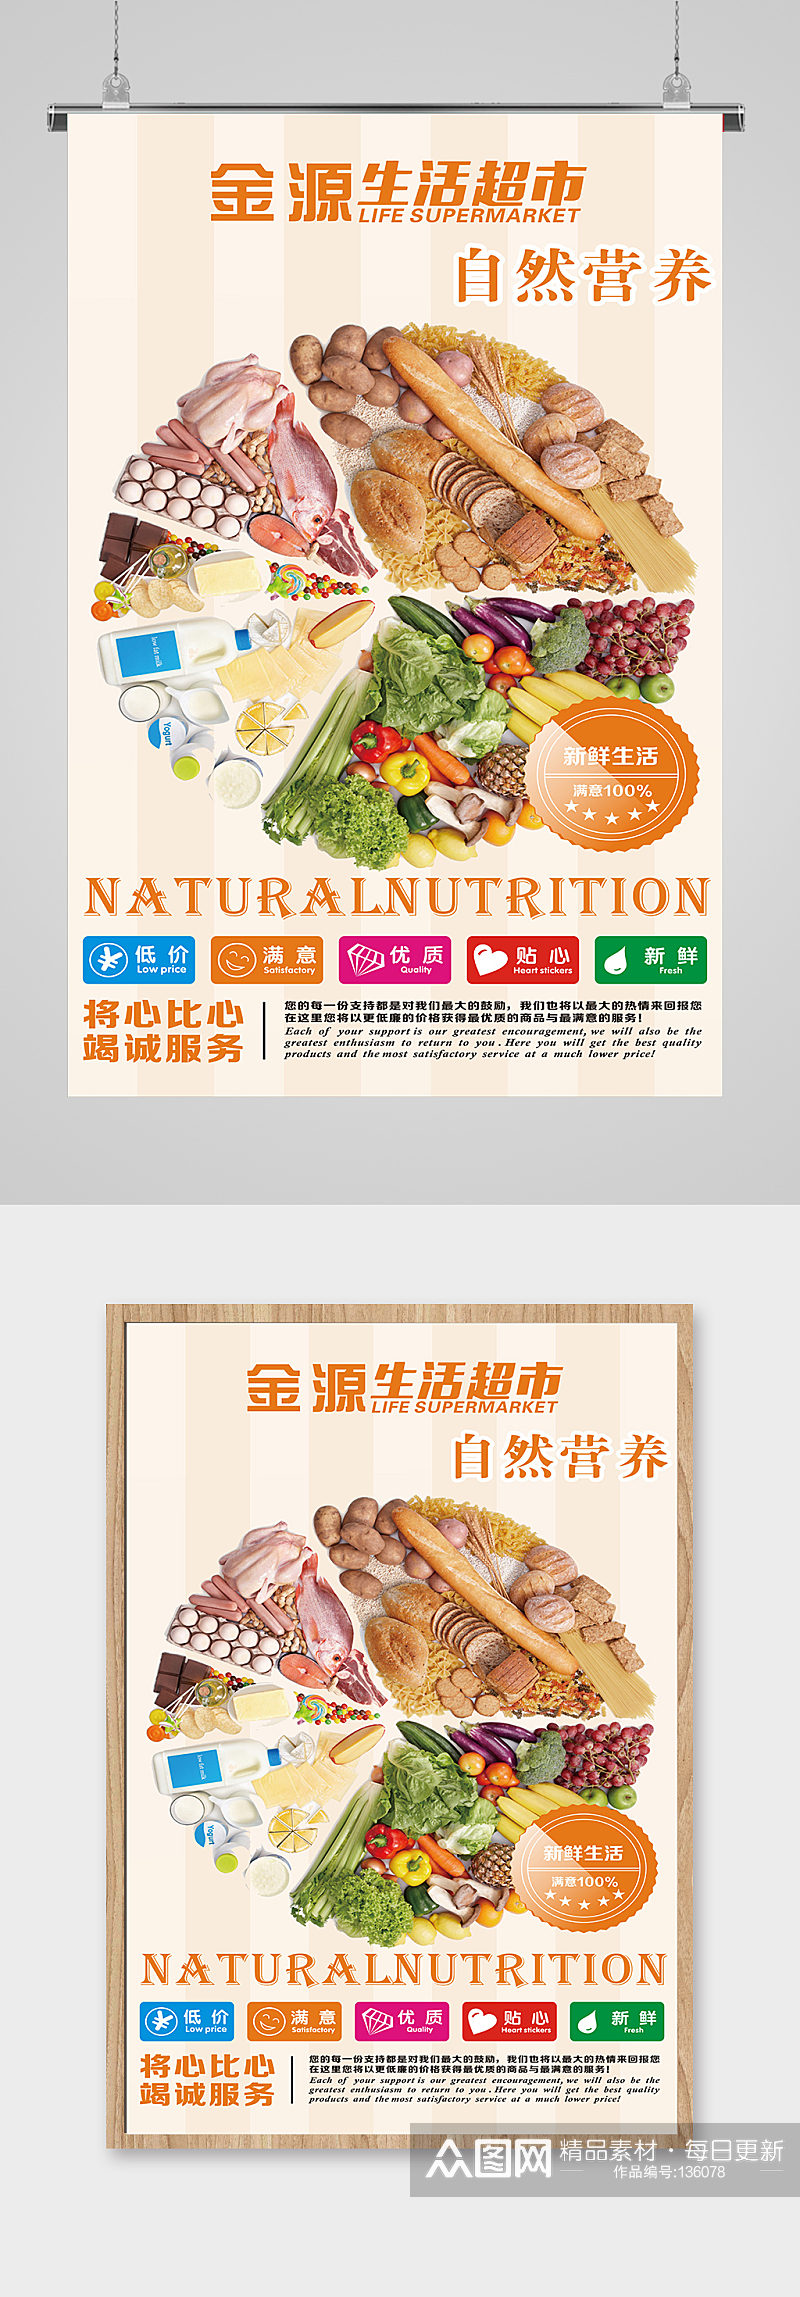 生鲜超市海报海产品蔬菜海报素材